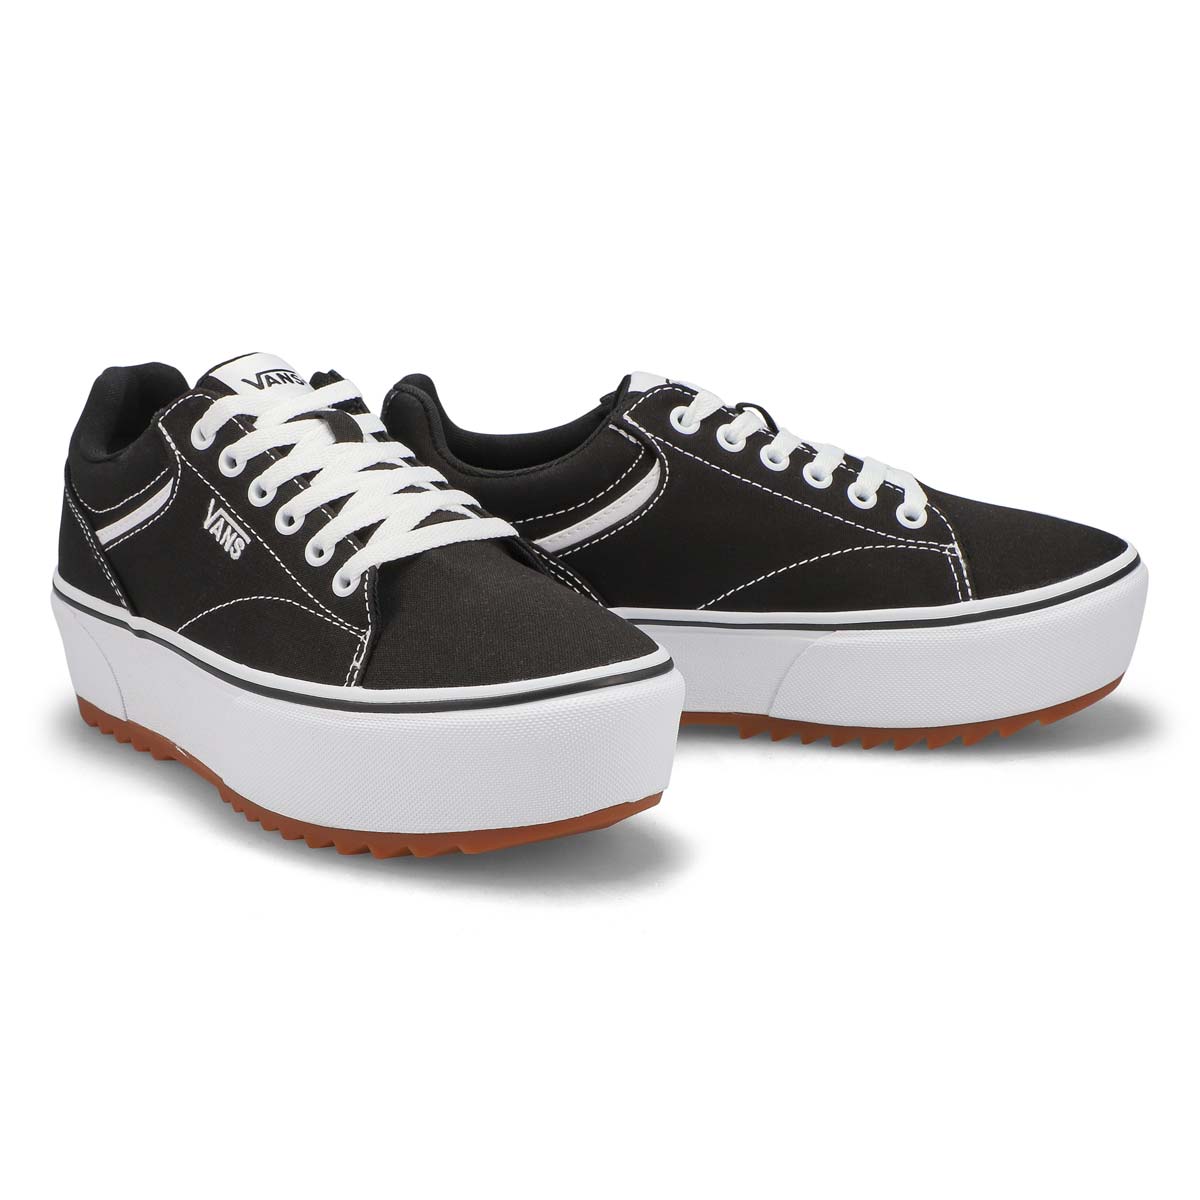 Vans Women's Seldan Platform Black and white Sneaker VNOA5JLEBLK1